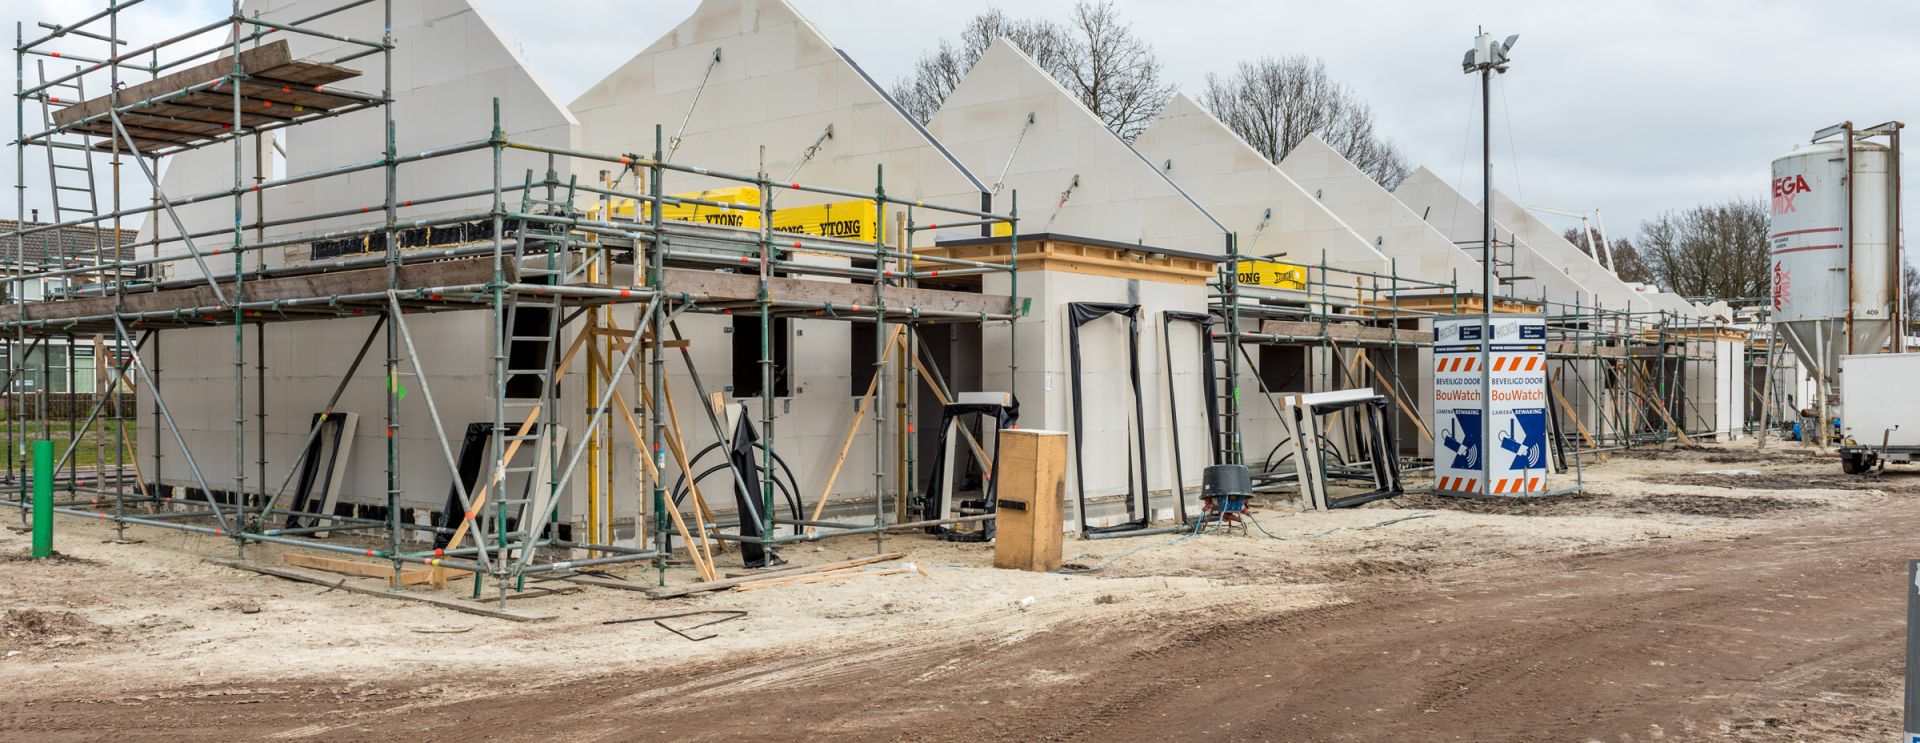 Nieuwbouw Boskamp-locatie: 26 maart t/m 1 april 2019 in woningaanbod